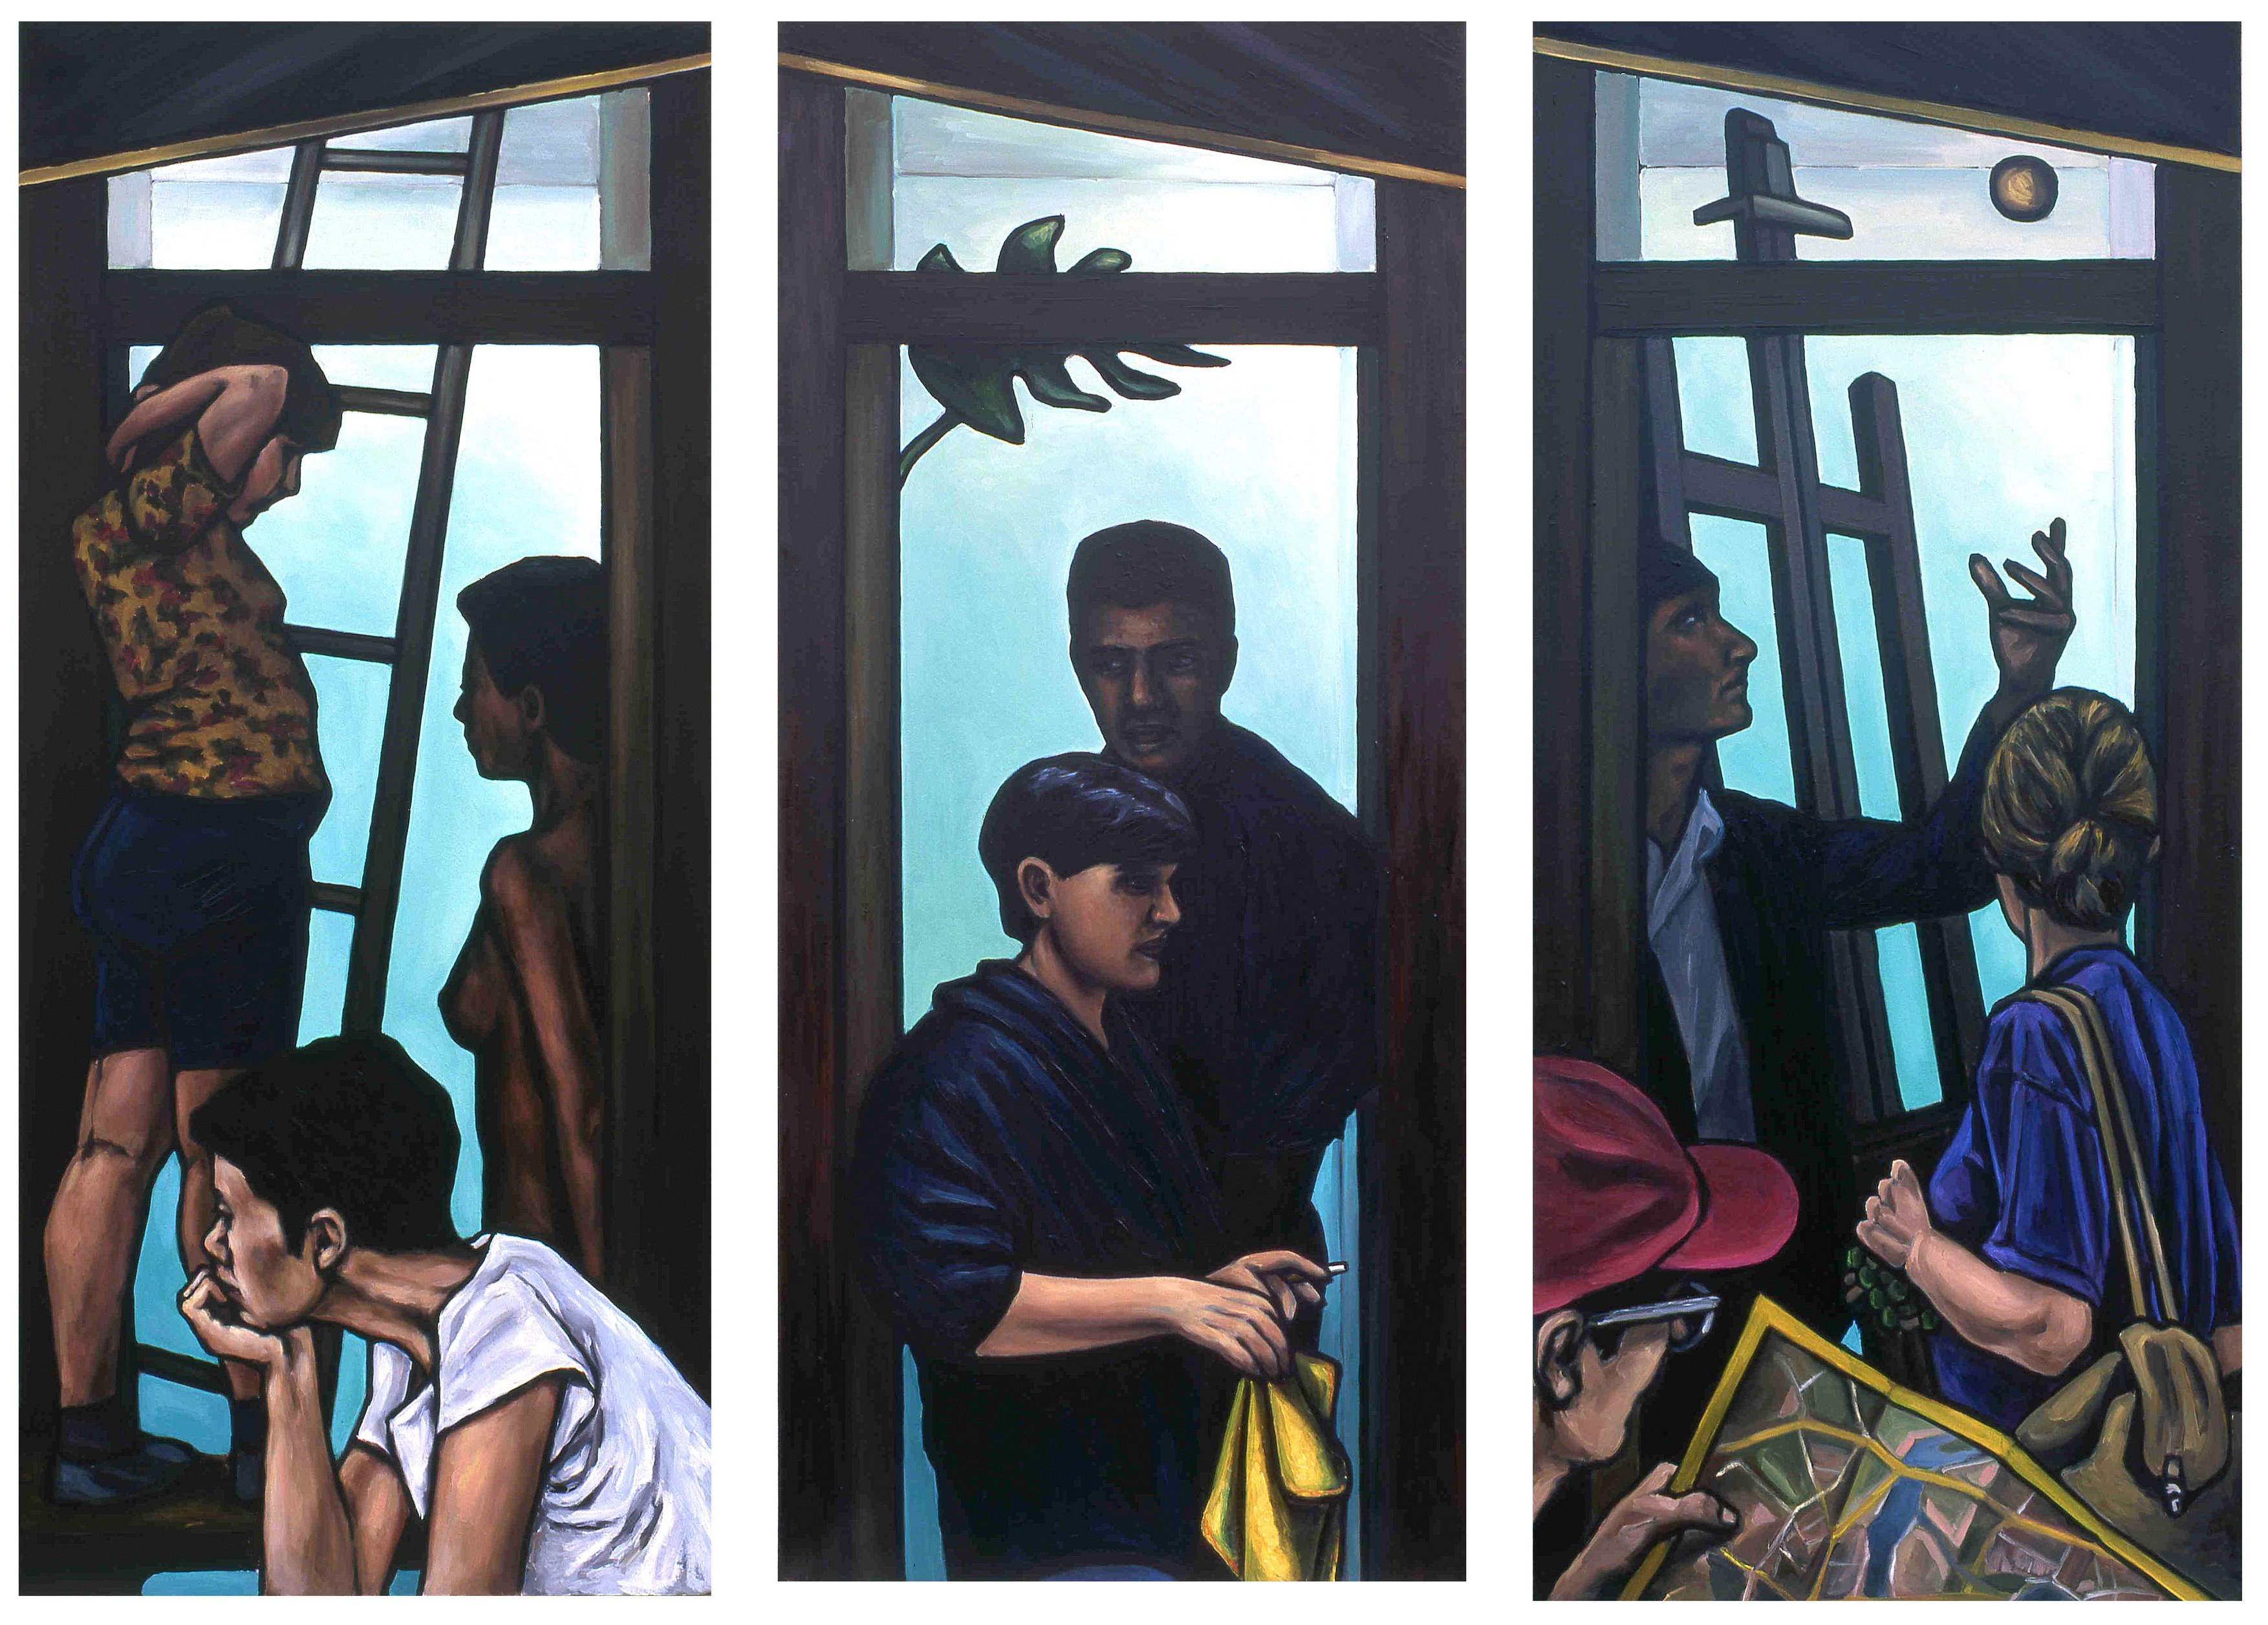 Kapılar, 1997-98, Triptik (Herbiri 180x80cm) / Doors, 1997-98, Triptych (Each panel 180x80cm)